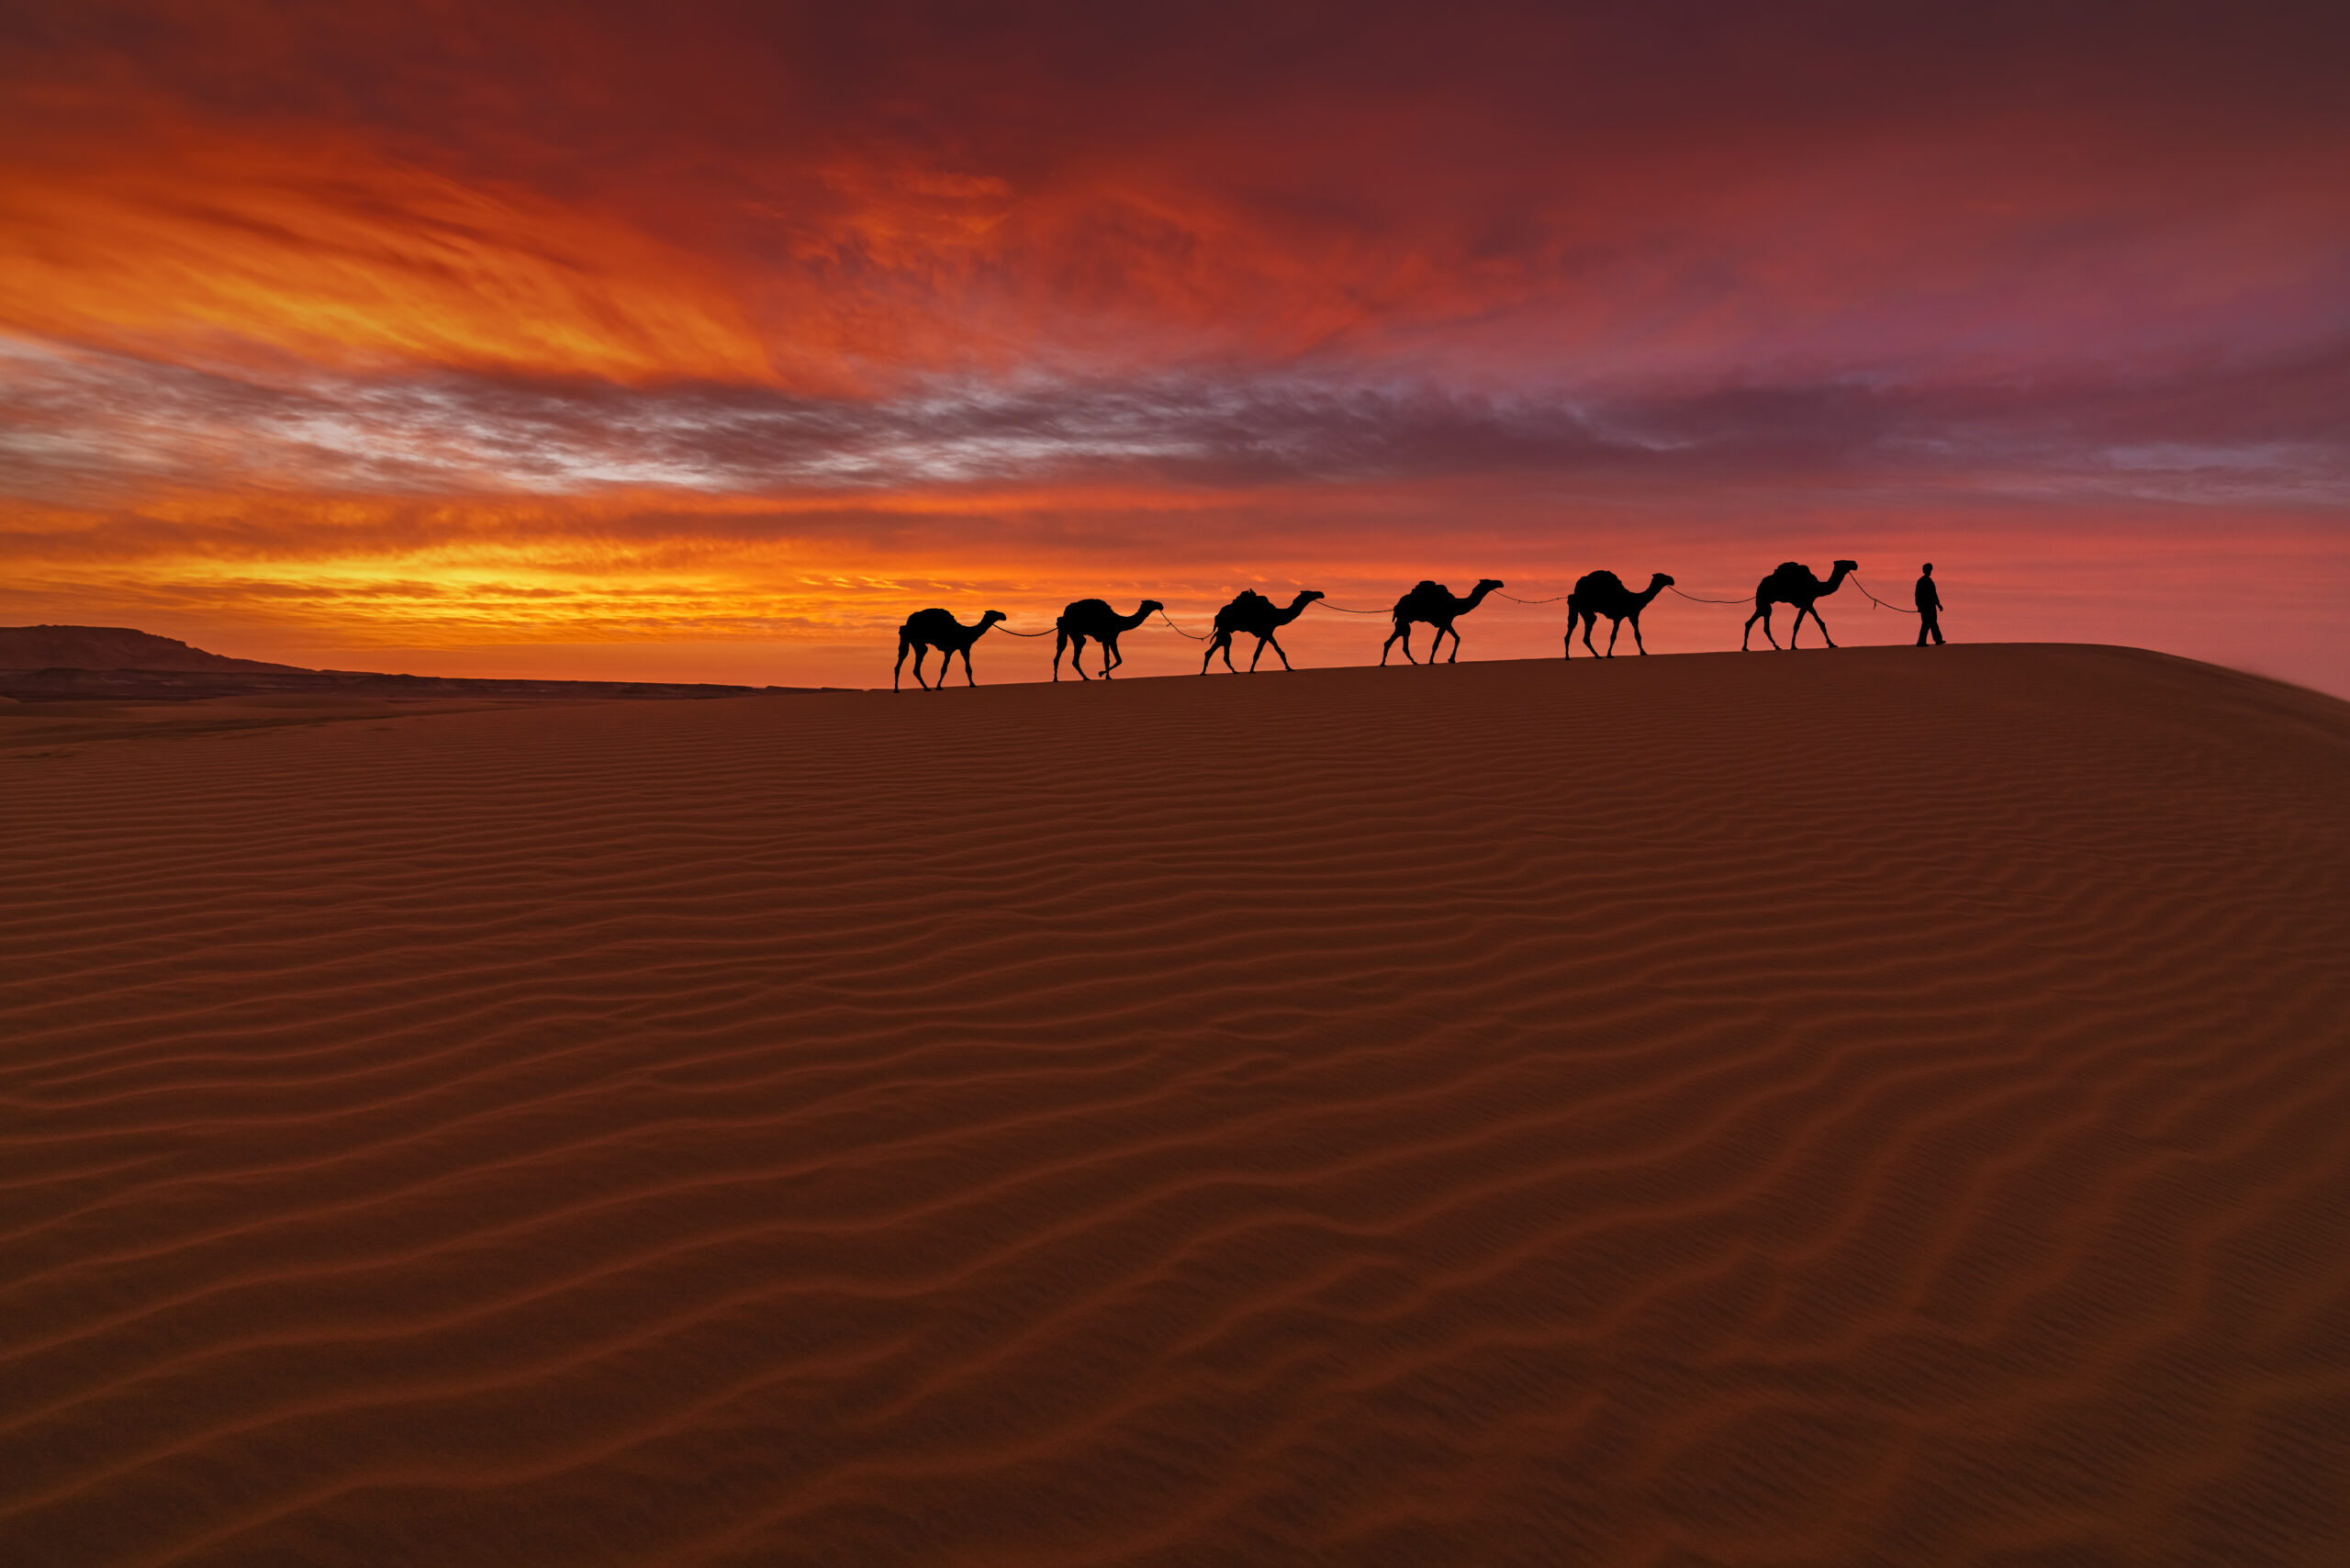 Camel caravan in the desert on a sand dune at sunset. Arid landscape of the Sahara desert